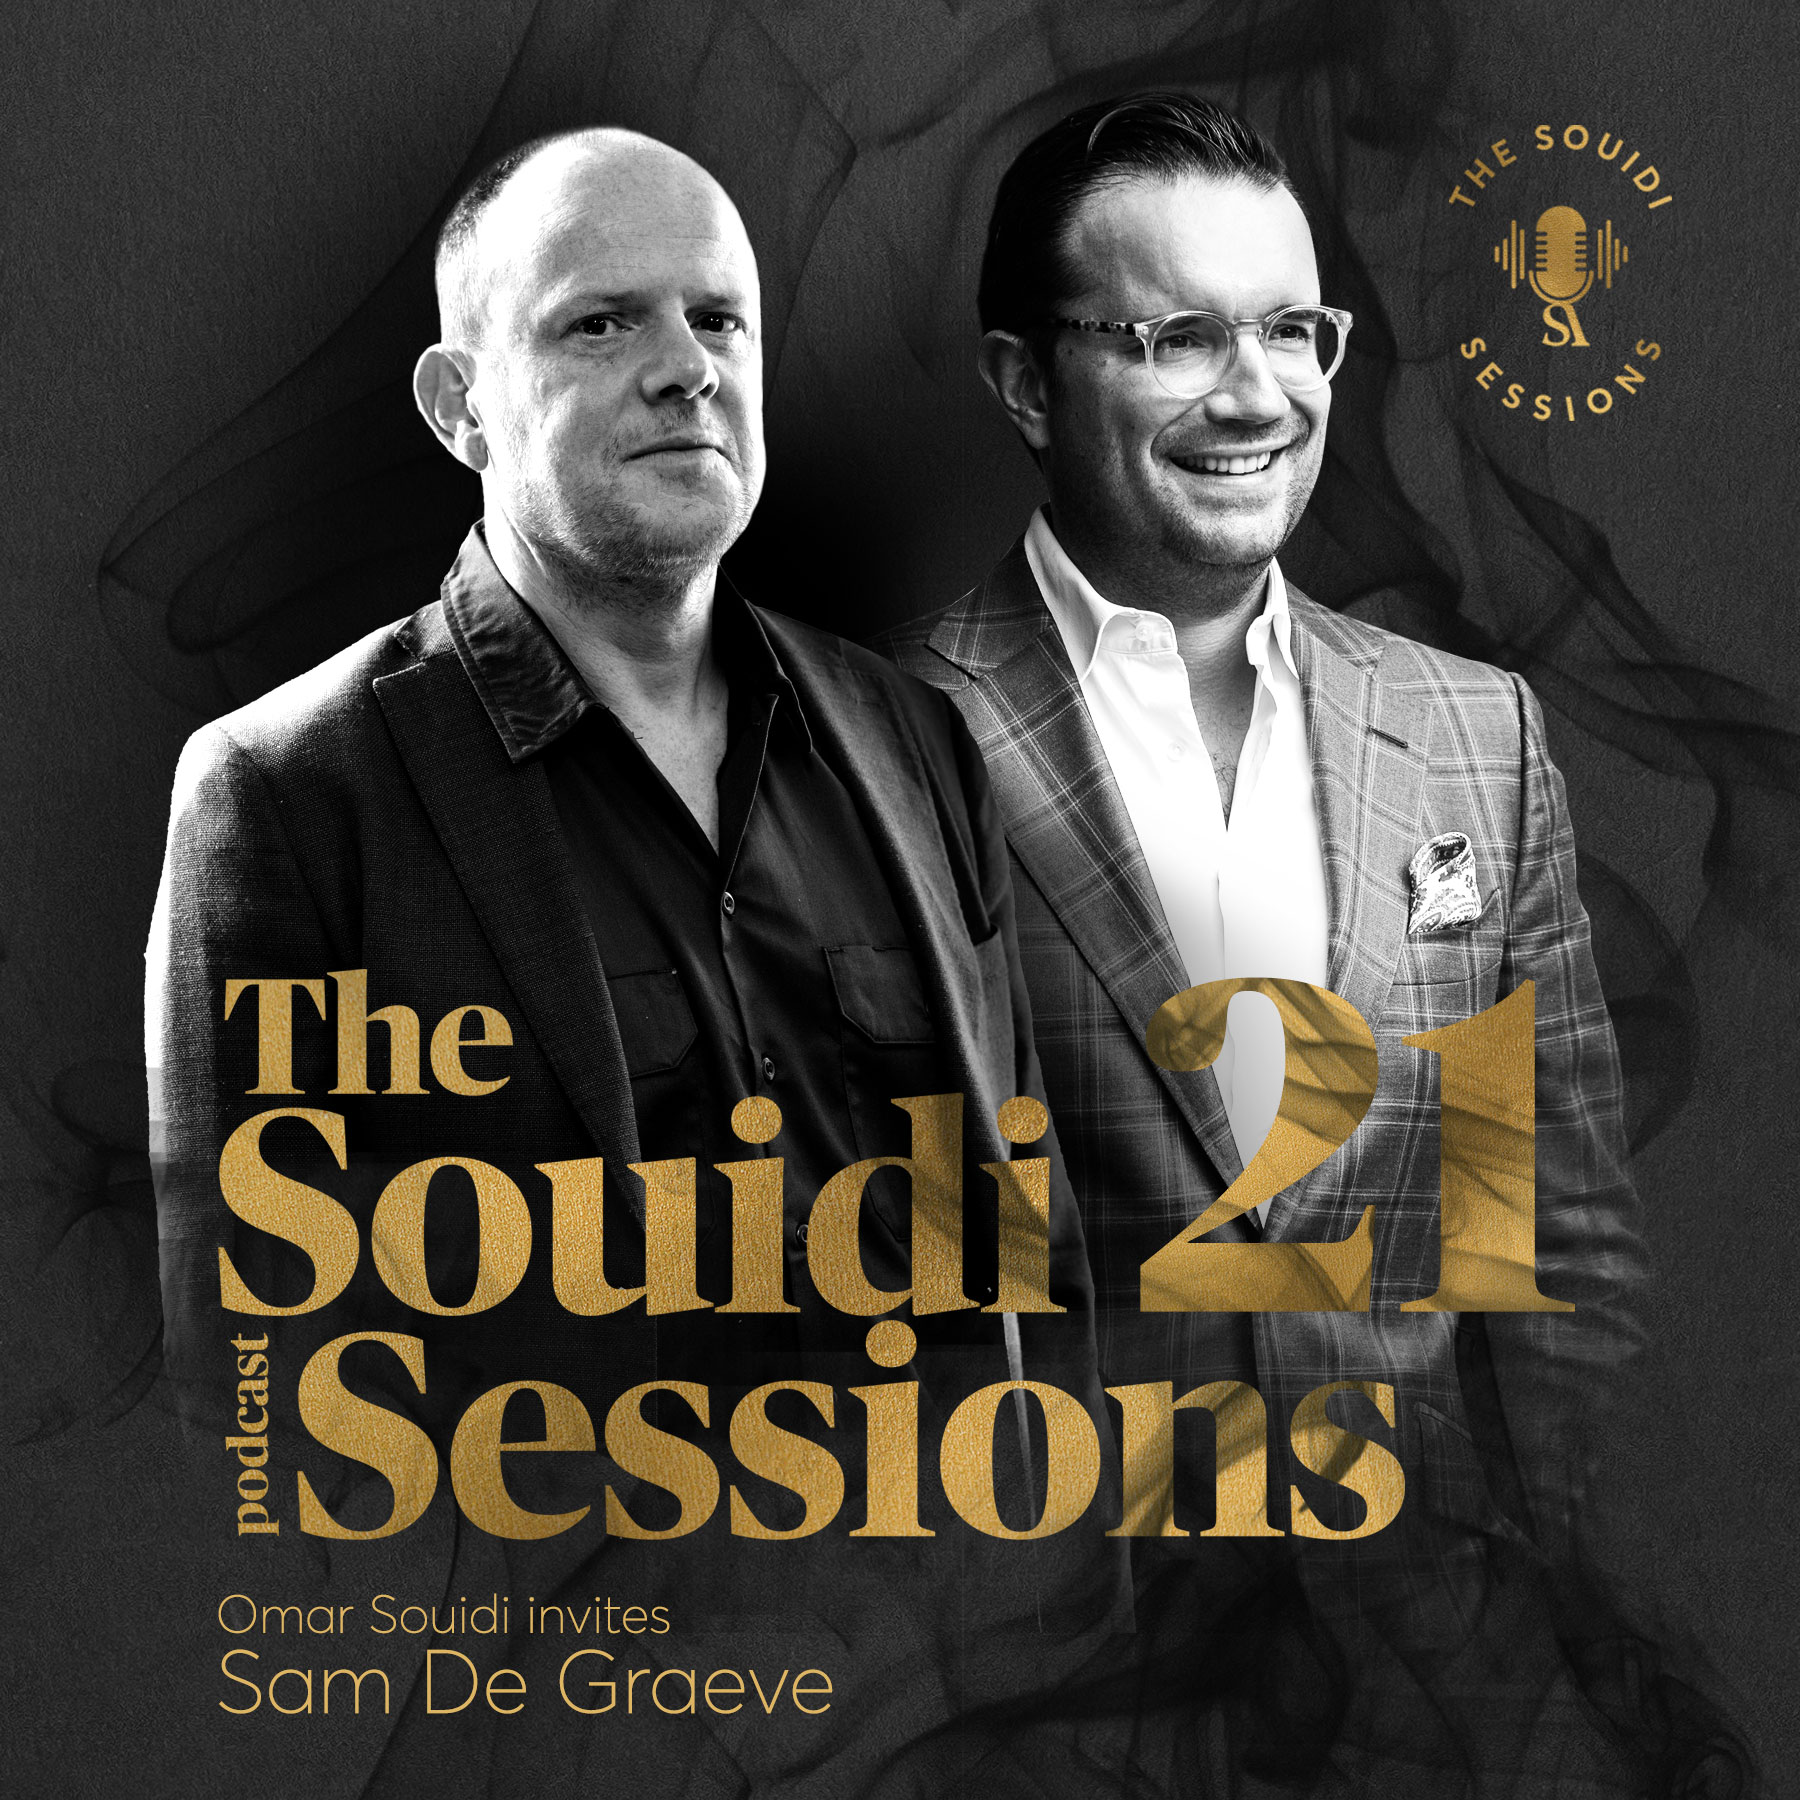 Souidi sessions met Sam De Graeve